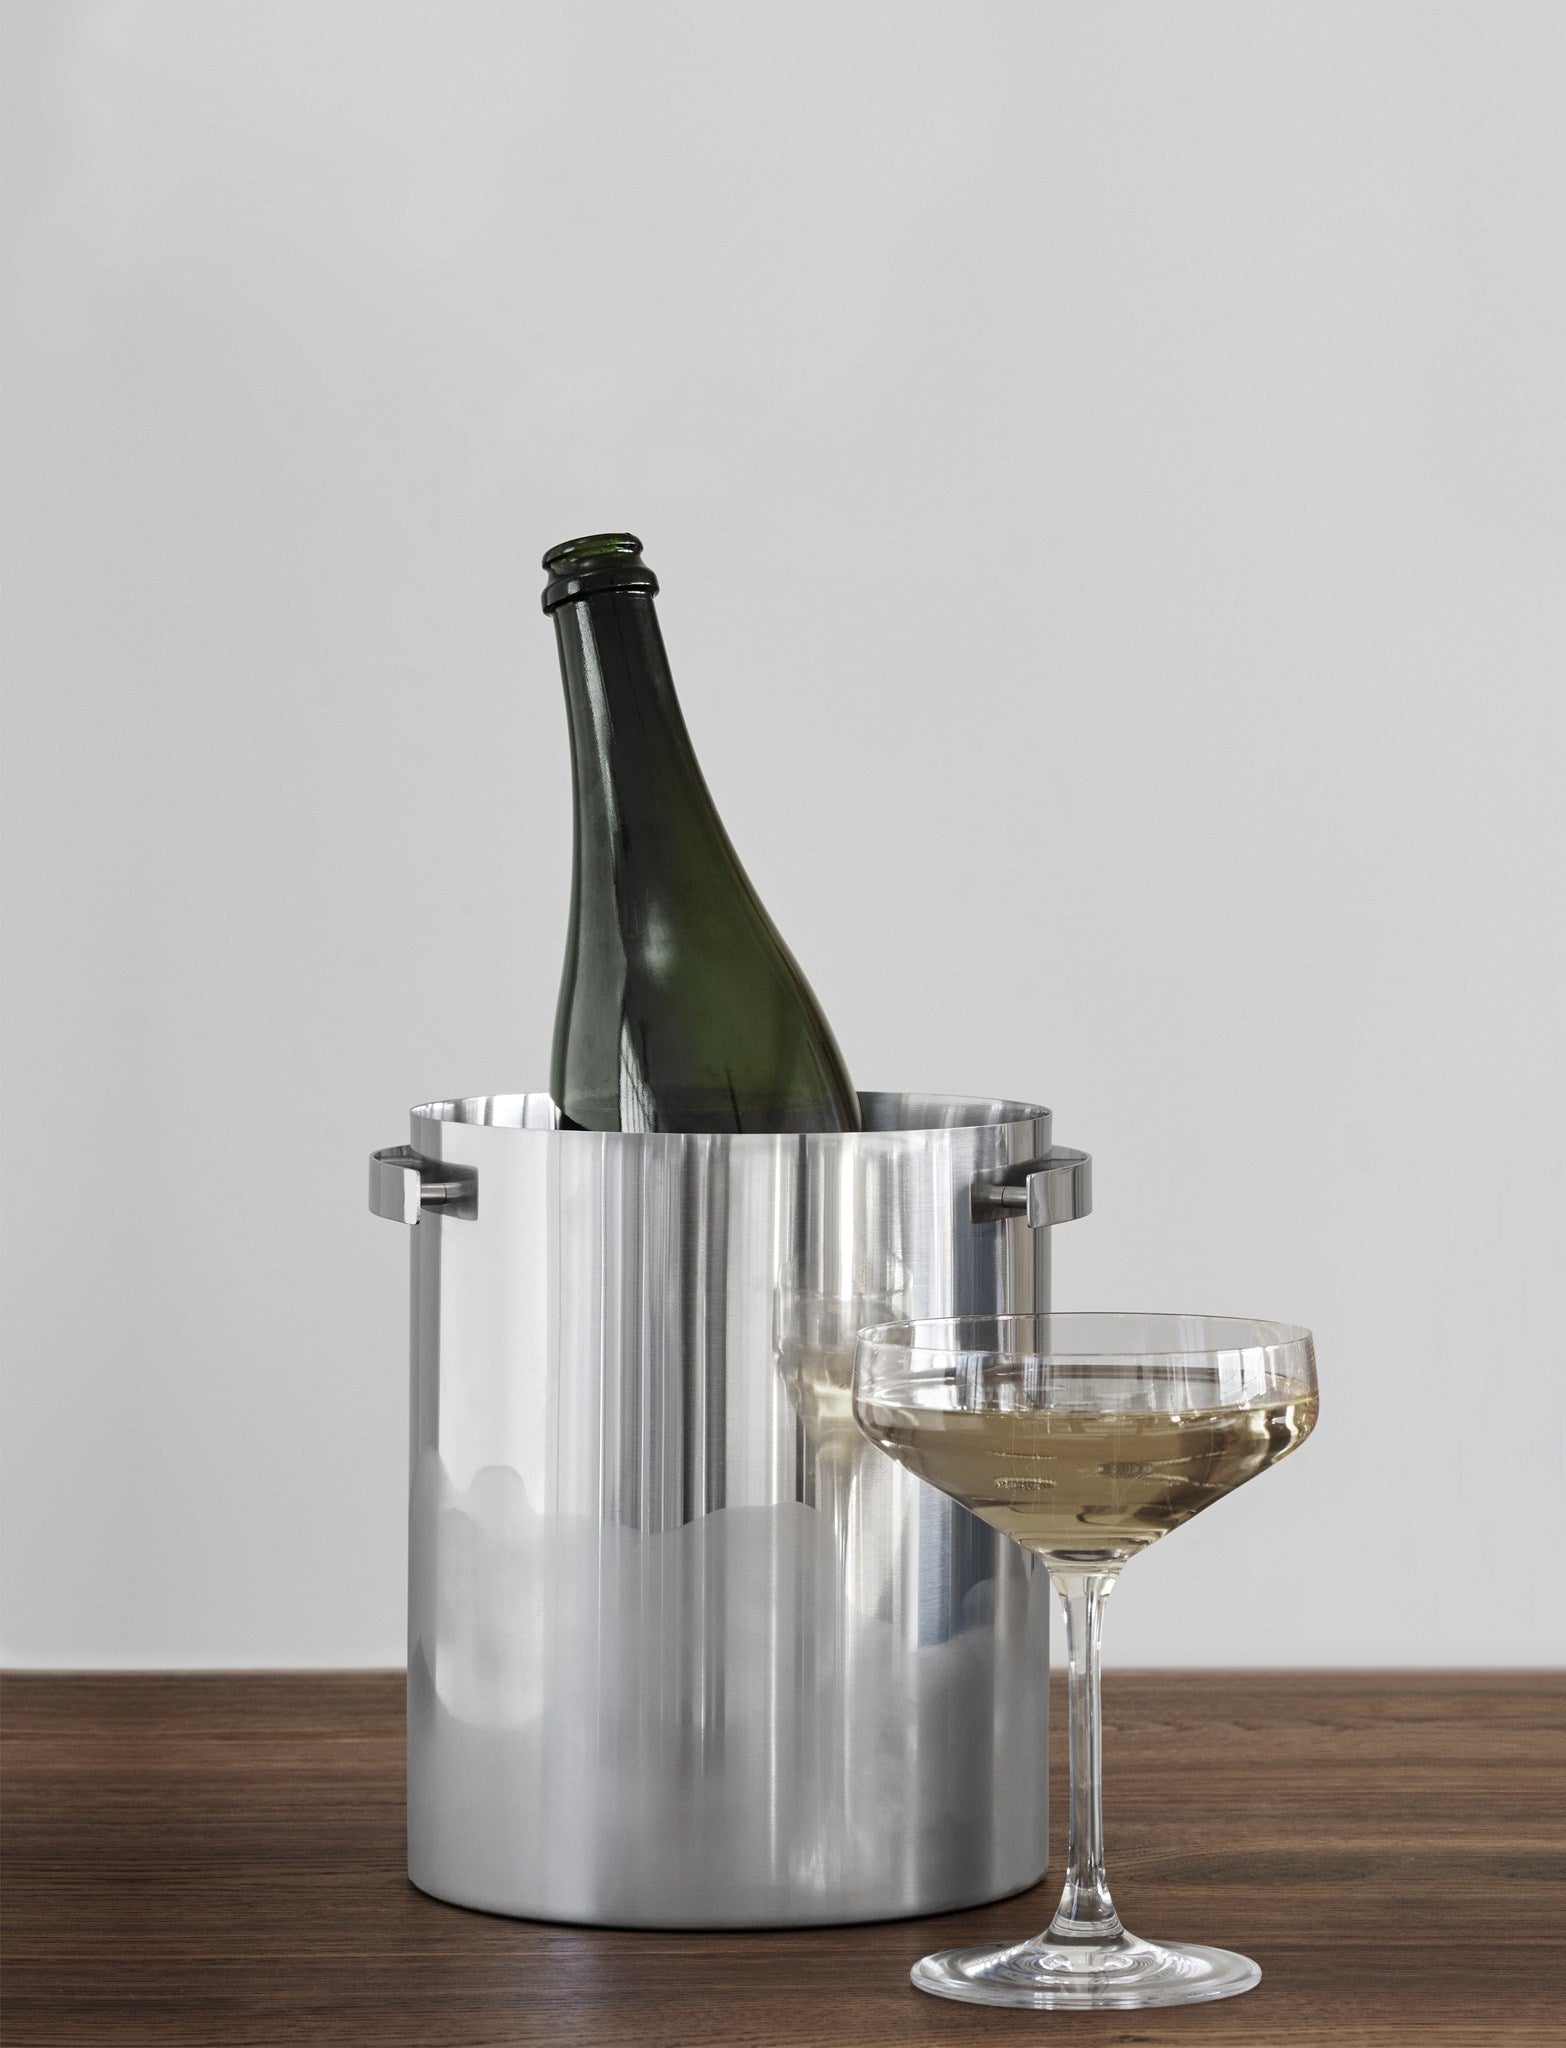 Stelton Arne Jacobsen Champagne koeler